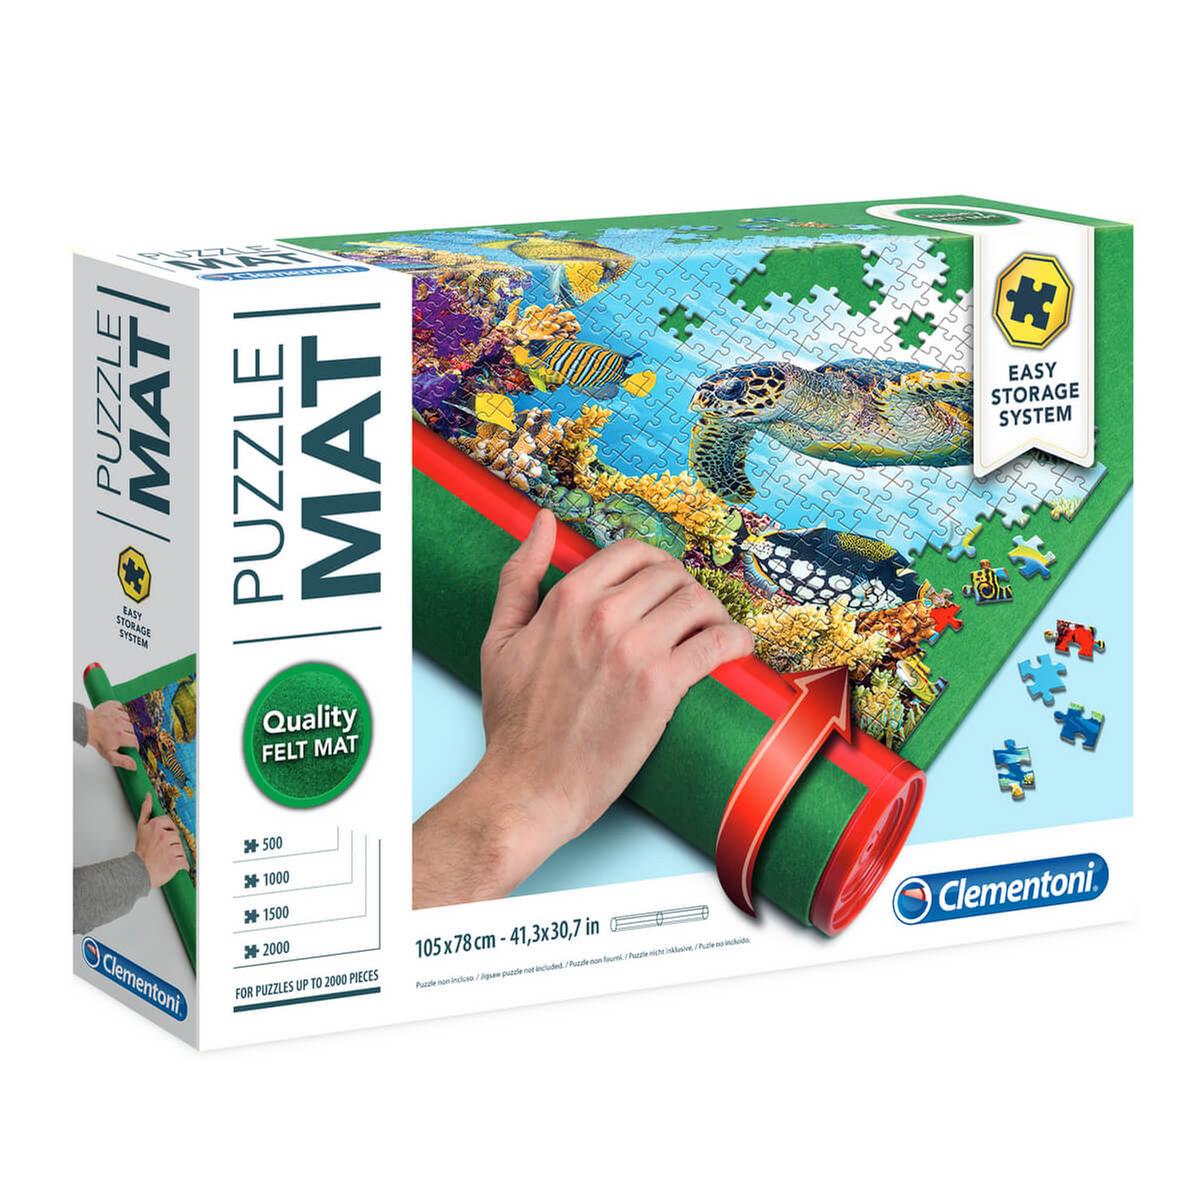 Tapete Puzzle, Tapete para Enrollar Puzzles 2000 1500 1000 Piezas,  Accesorios para Guardar Los Puzzles, Jigsaw Puzzle Mat Roll up. :  : Juguetes y juegos